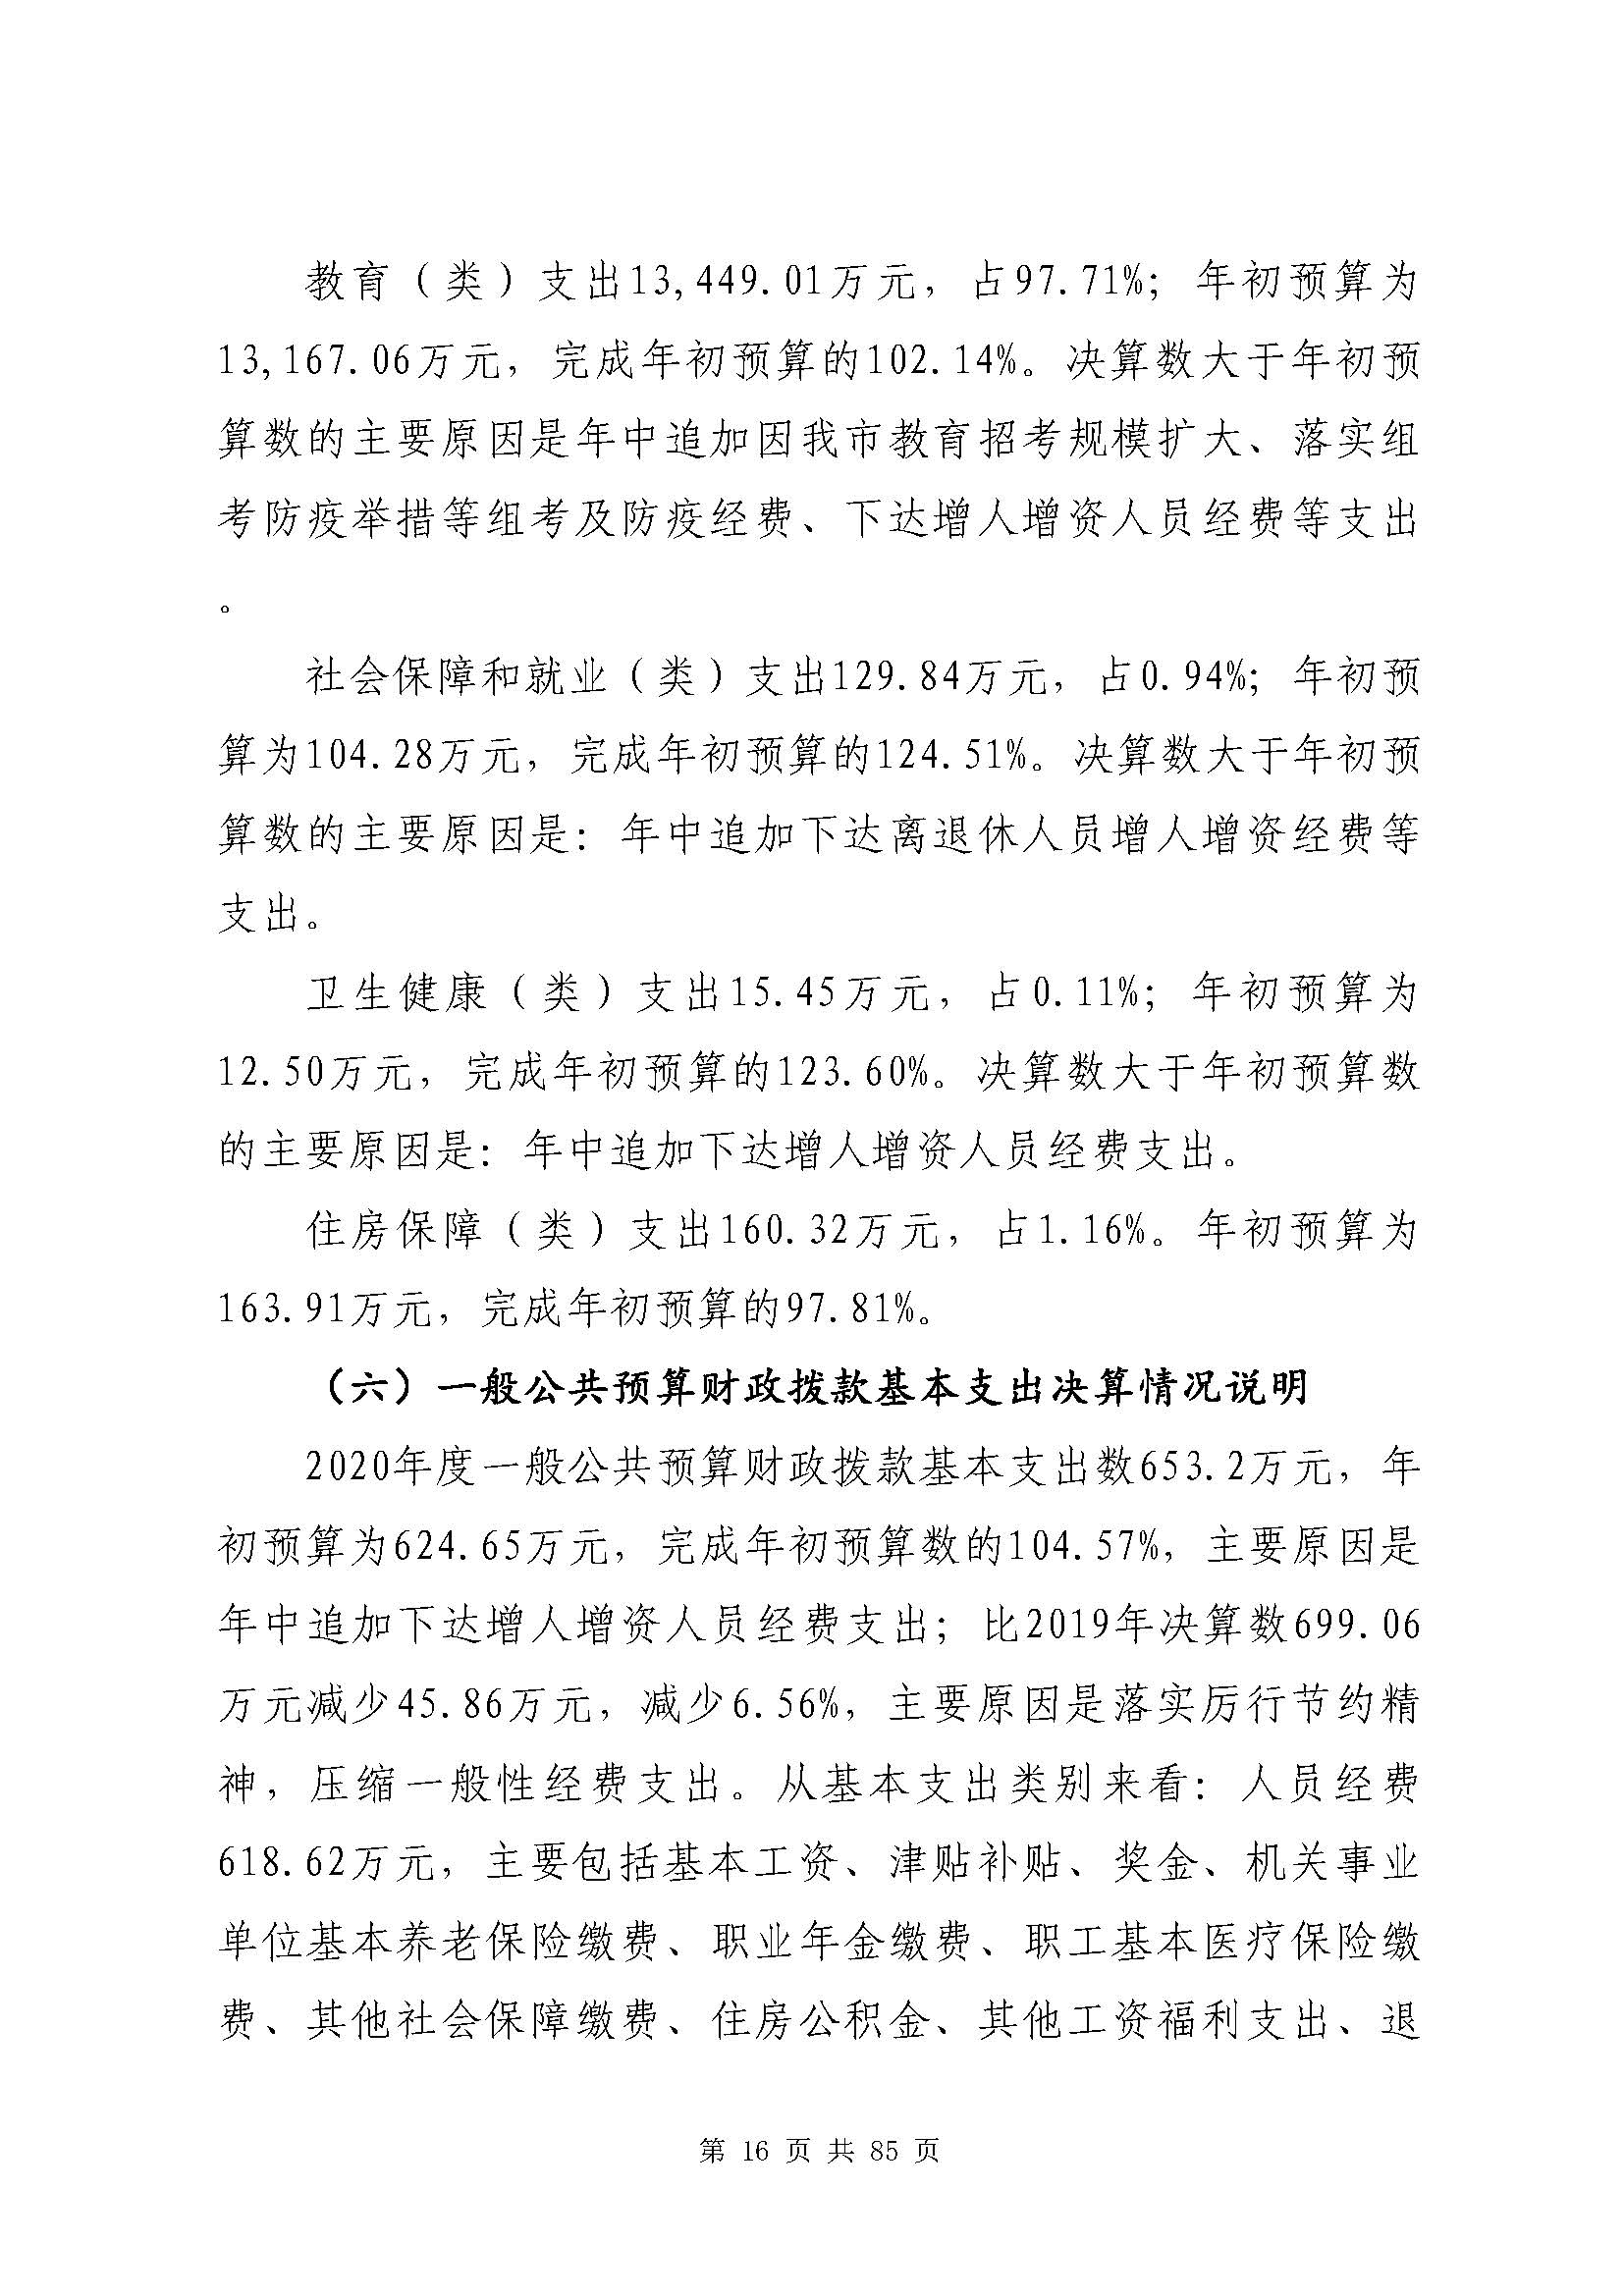 深圳市招生考试办公室2020年度部门决算_页面_17.jpg